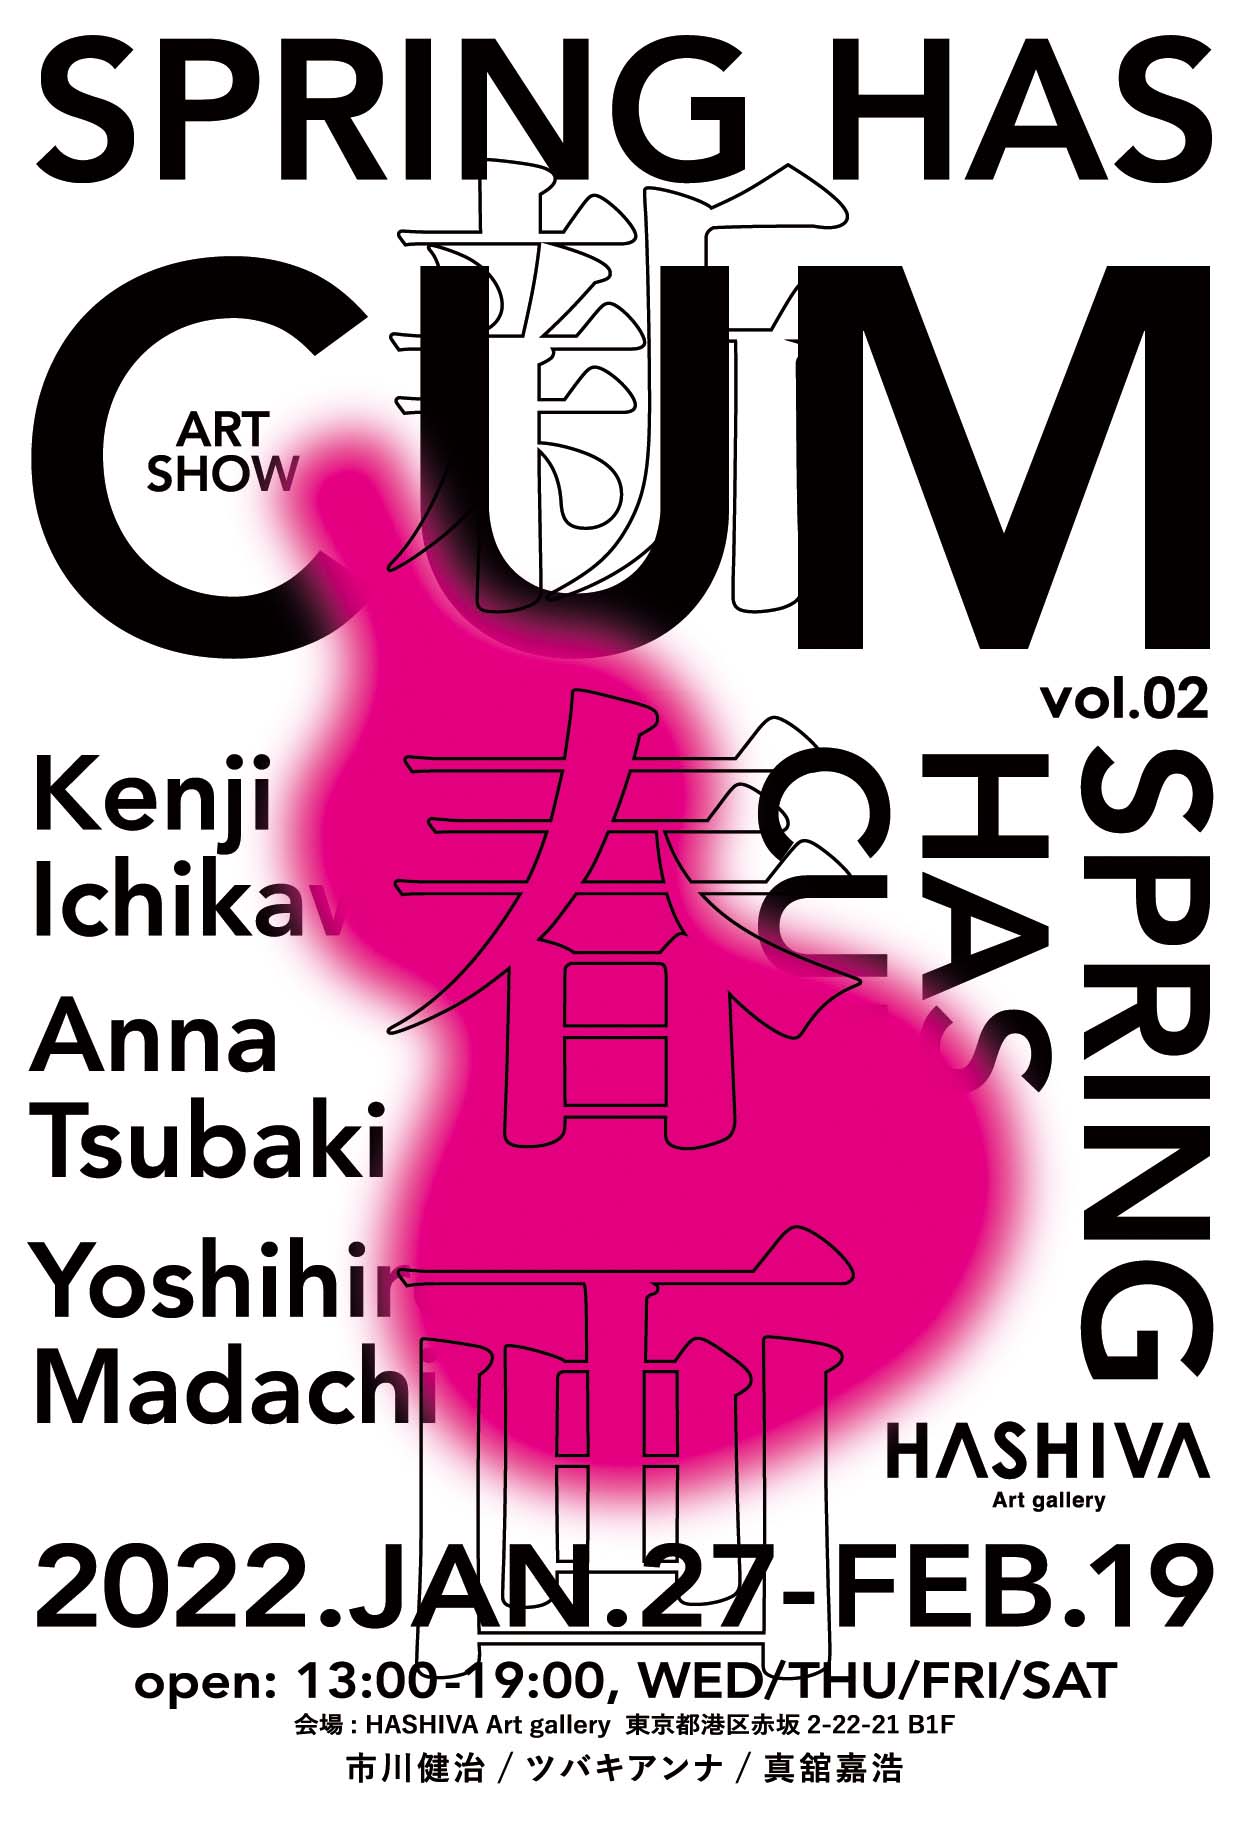 市川健治、ツバキアンナ、真舘嘉浩の3名のアーティストによる展示販売会SPRING HAS CUM-新春画展-のポスター